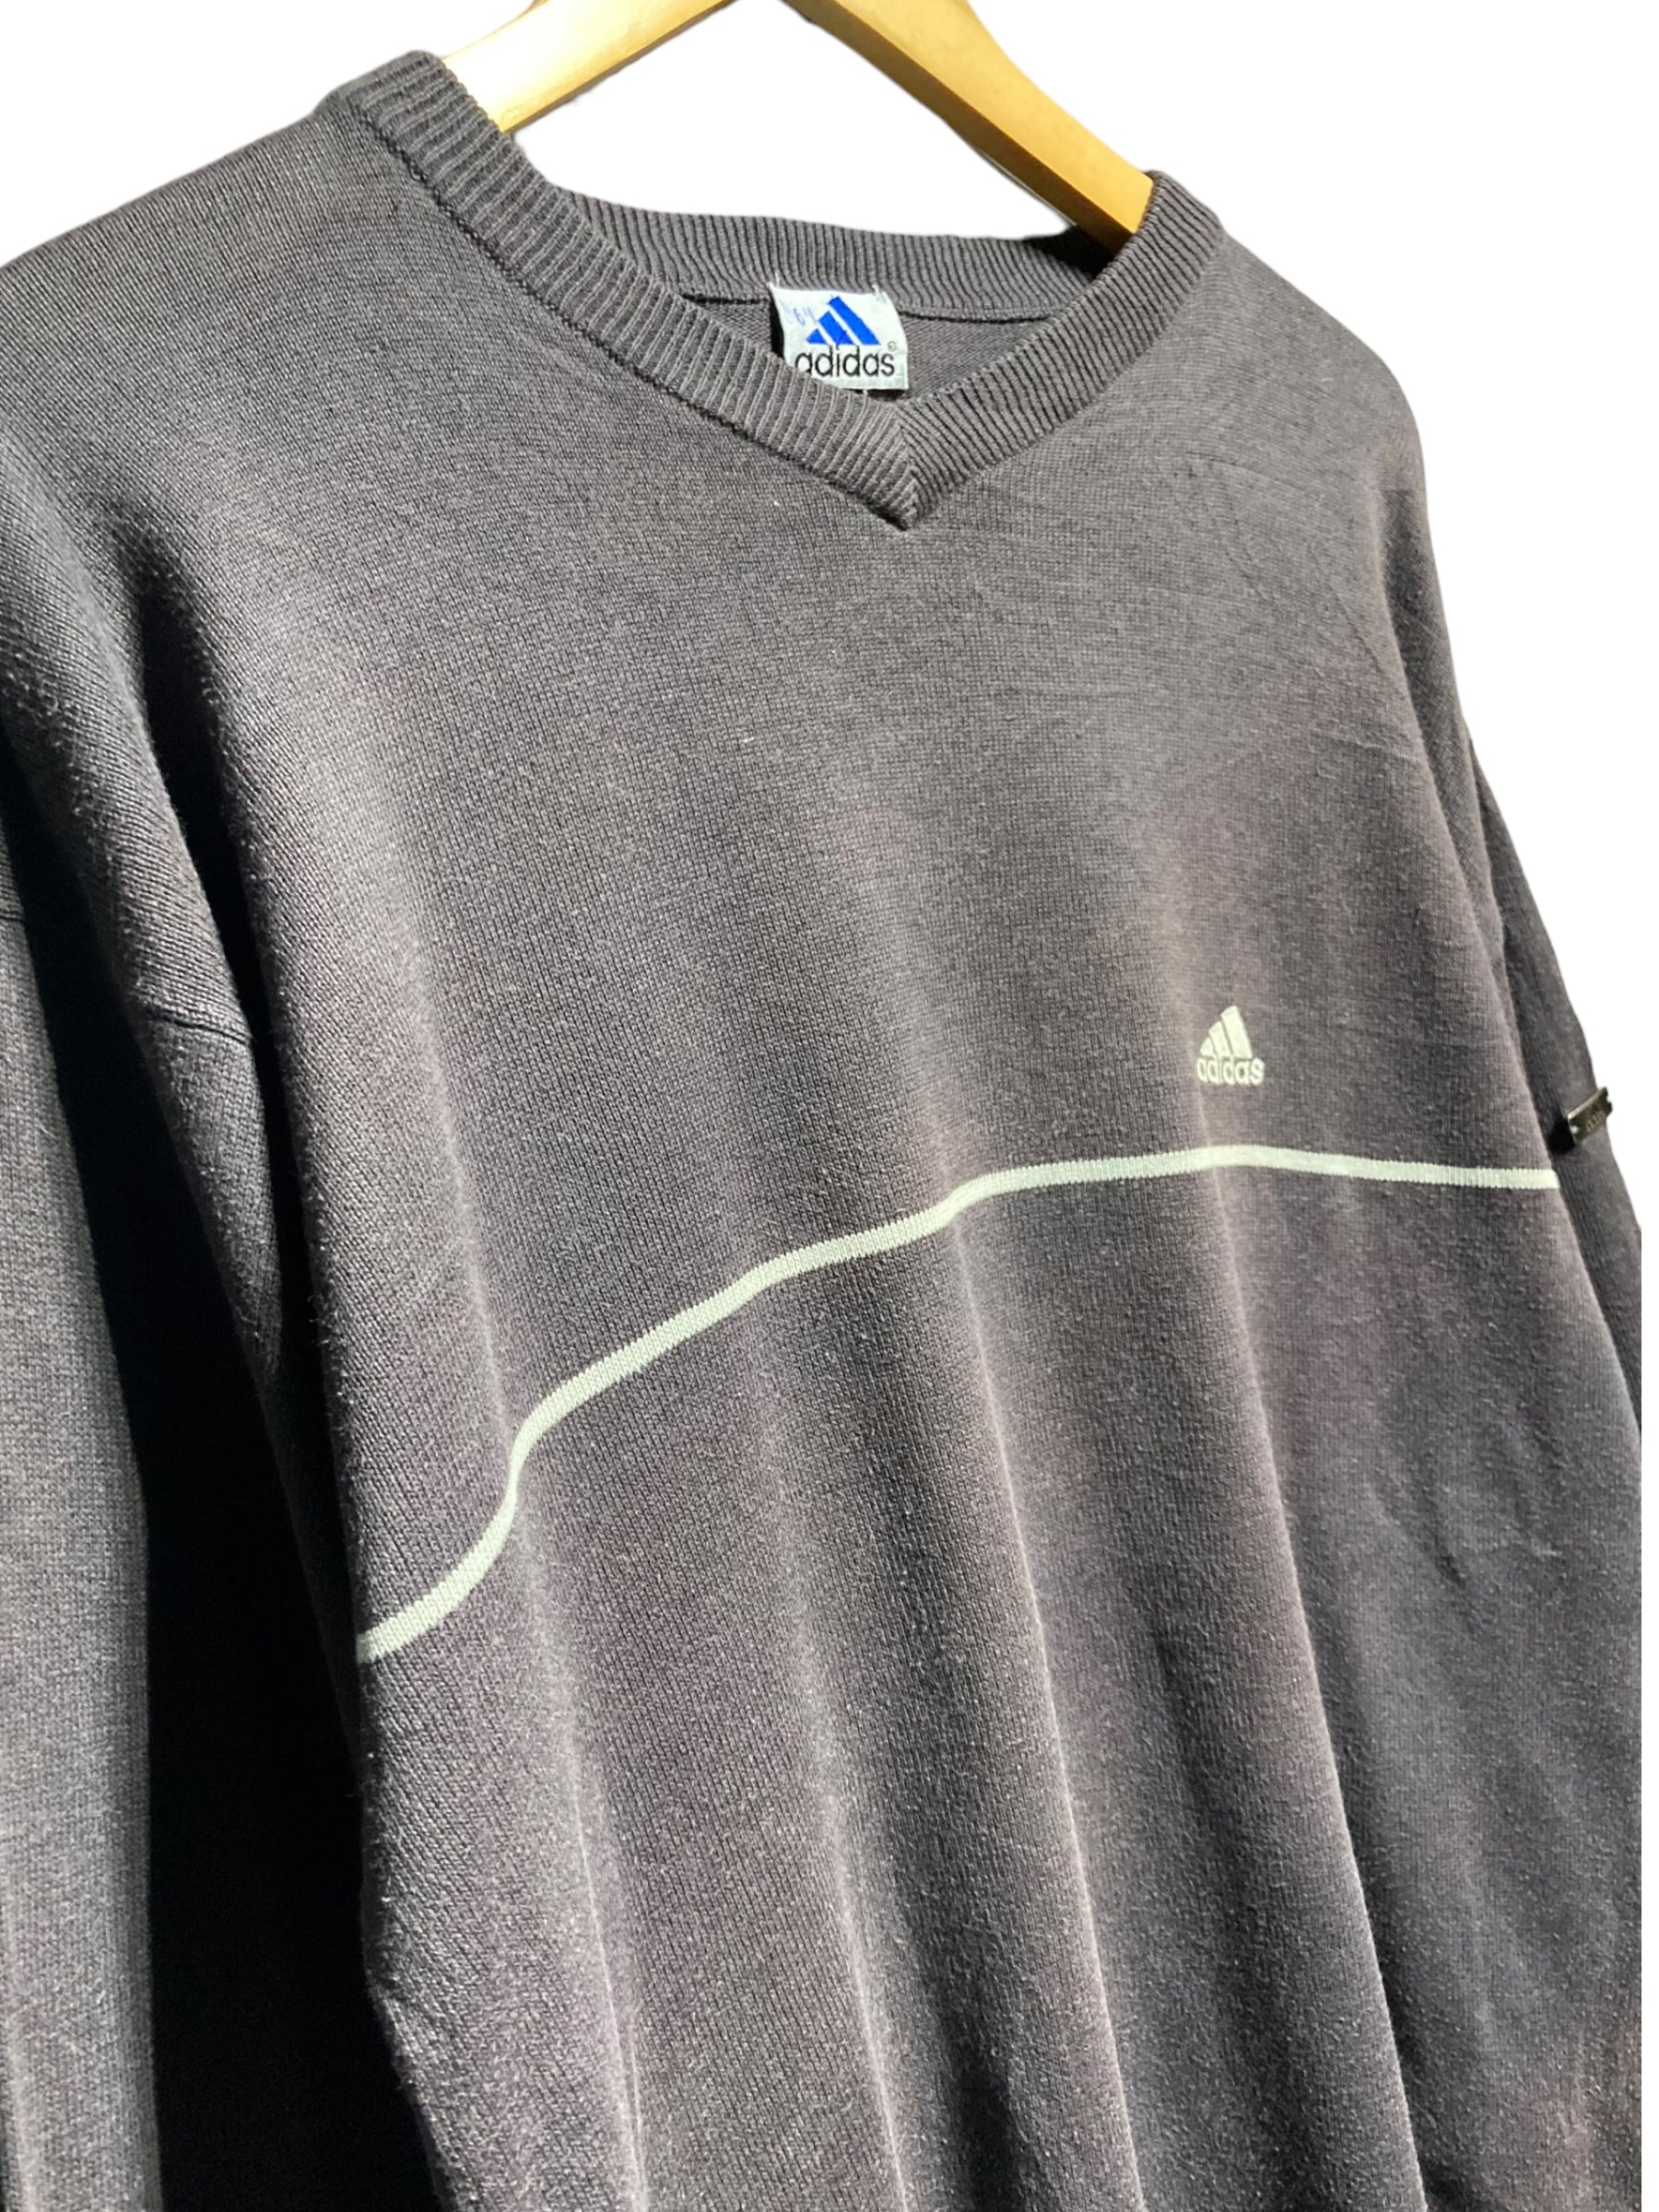 90s adidas アディダス knit sweater ニットセーター – STORAGE UNLIMITED